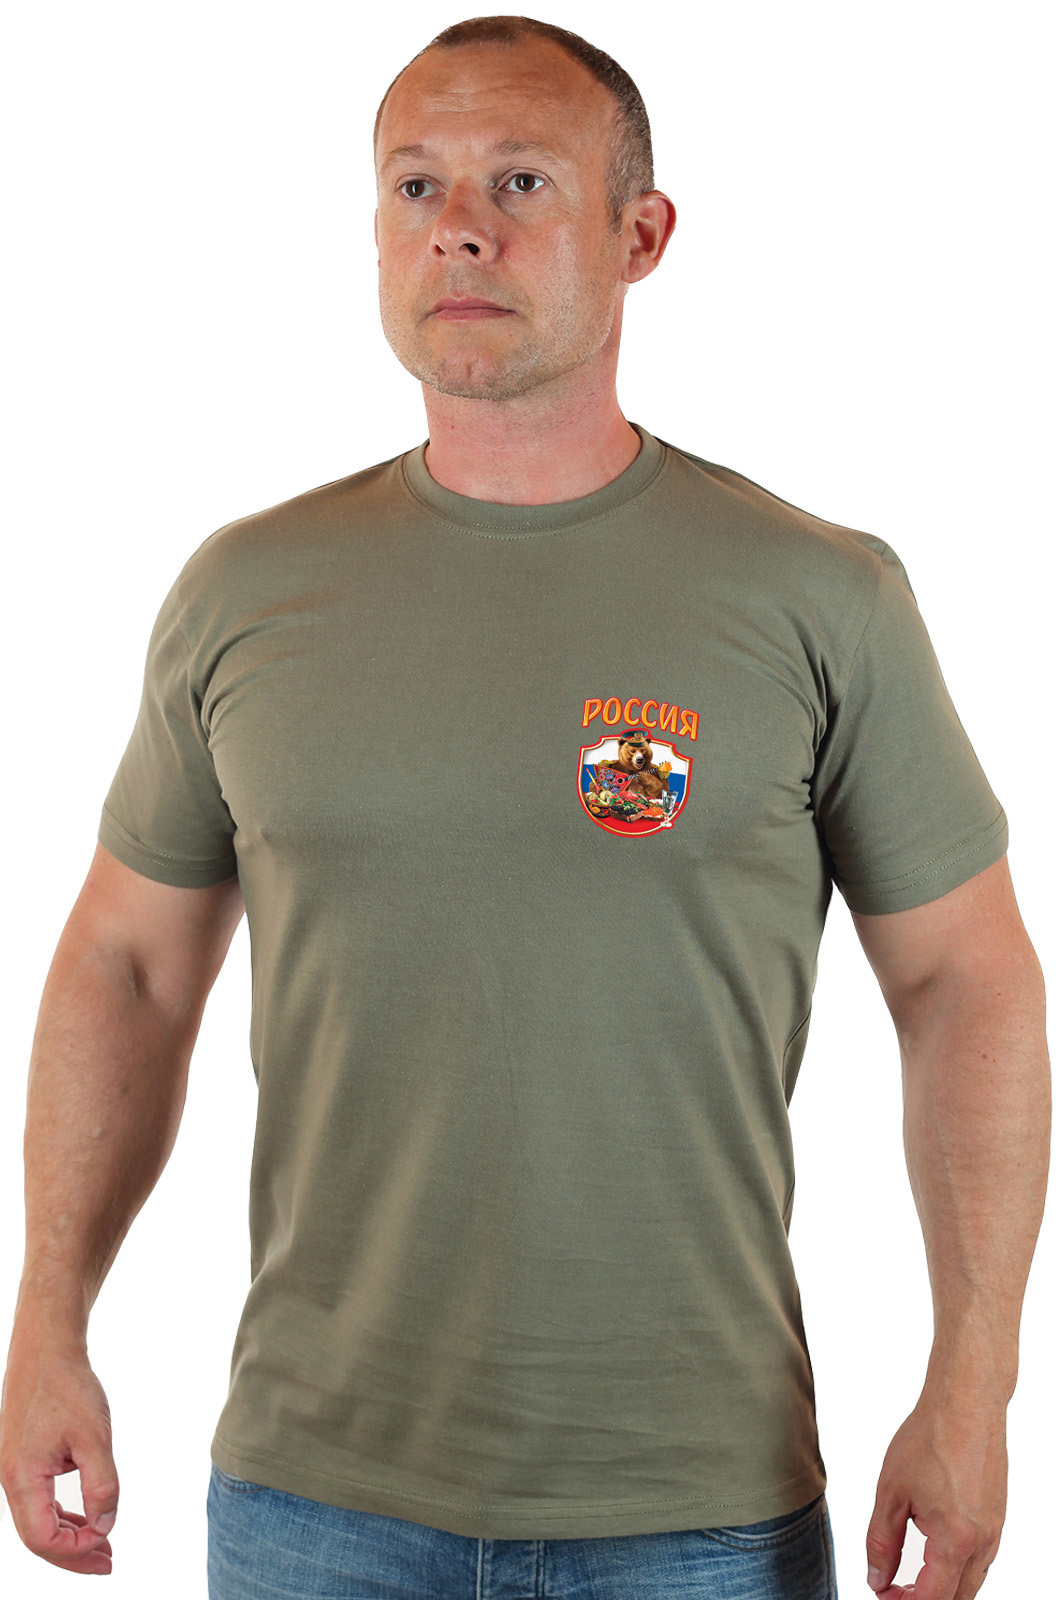 Практичная мужская футболка с патриотичной эмблемой - купить в подарок